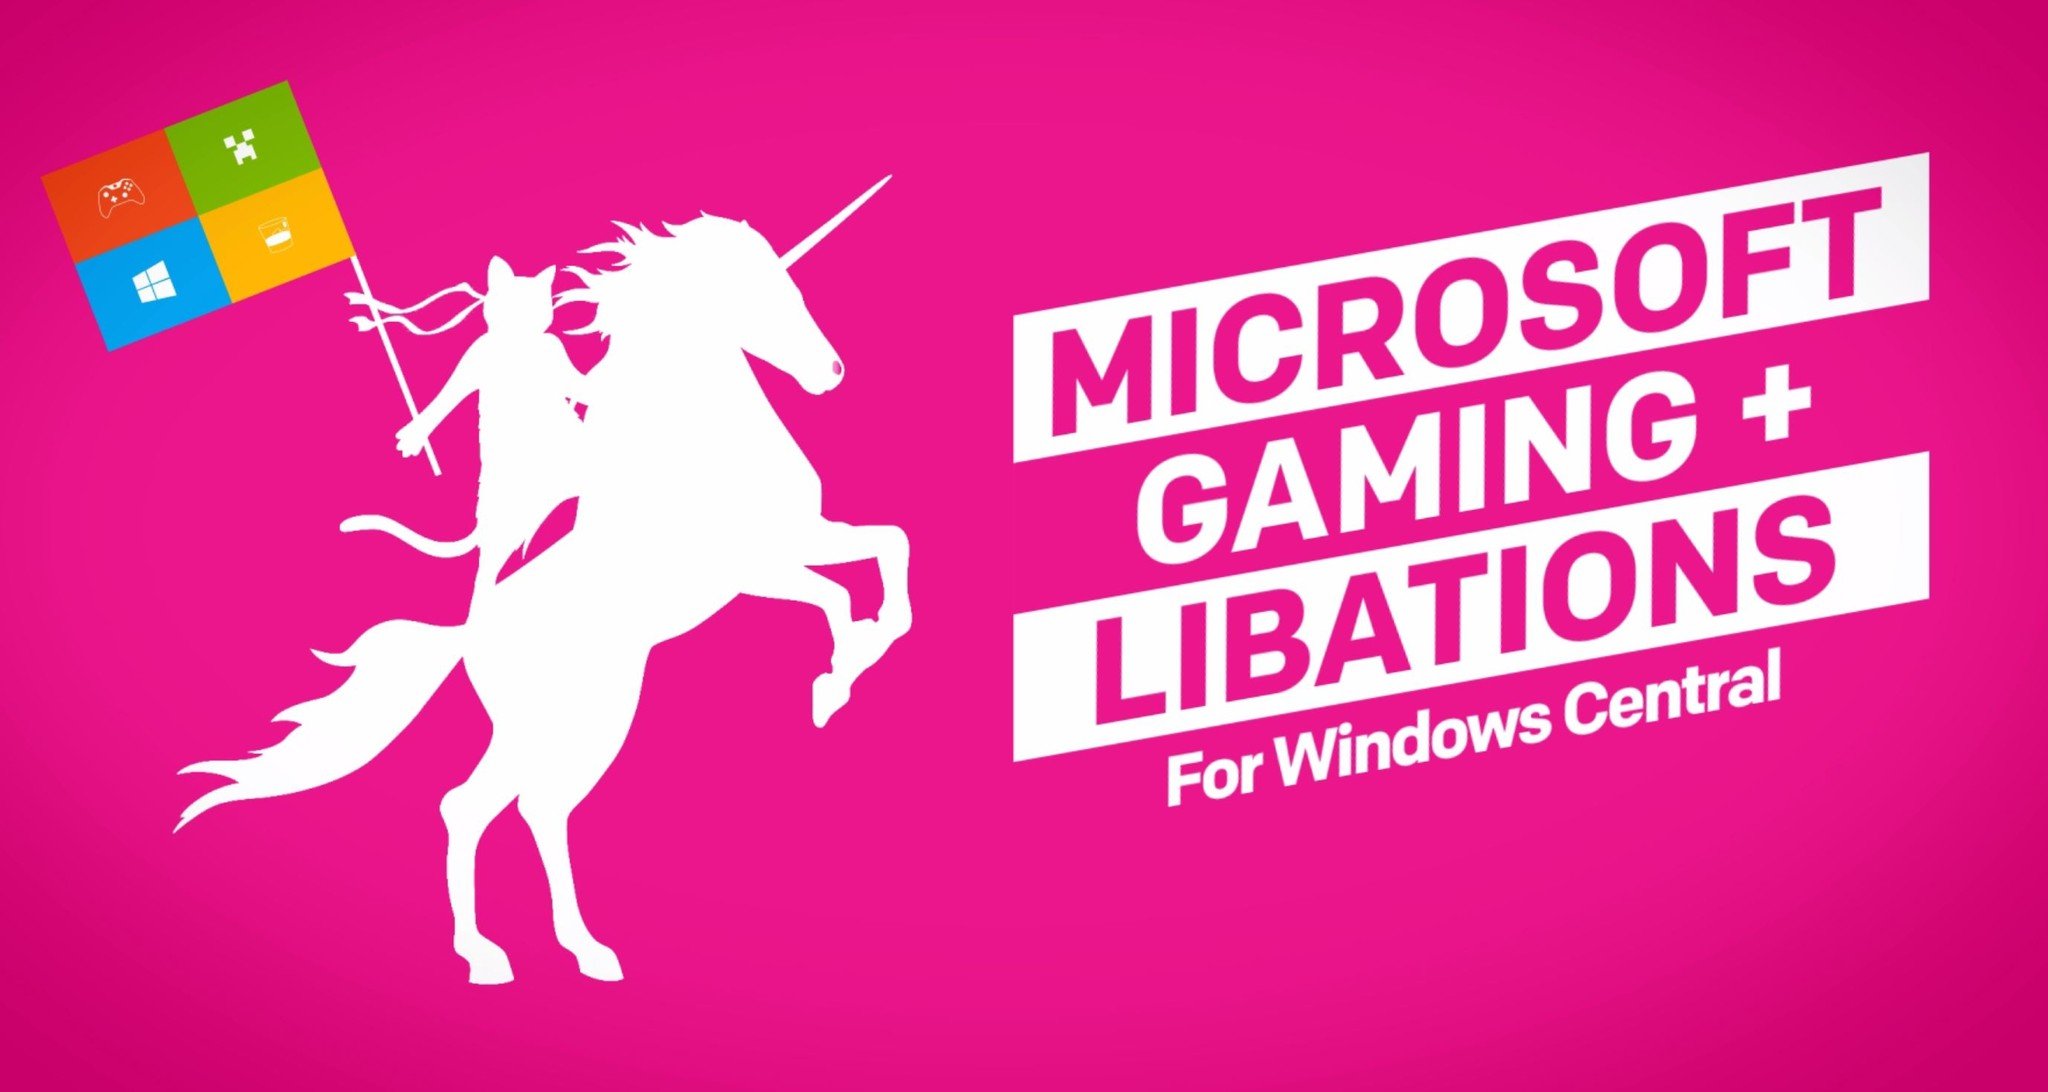 Microsoft, Gaming and Libations